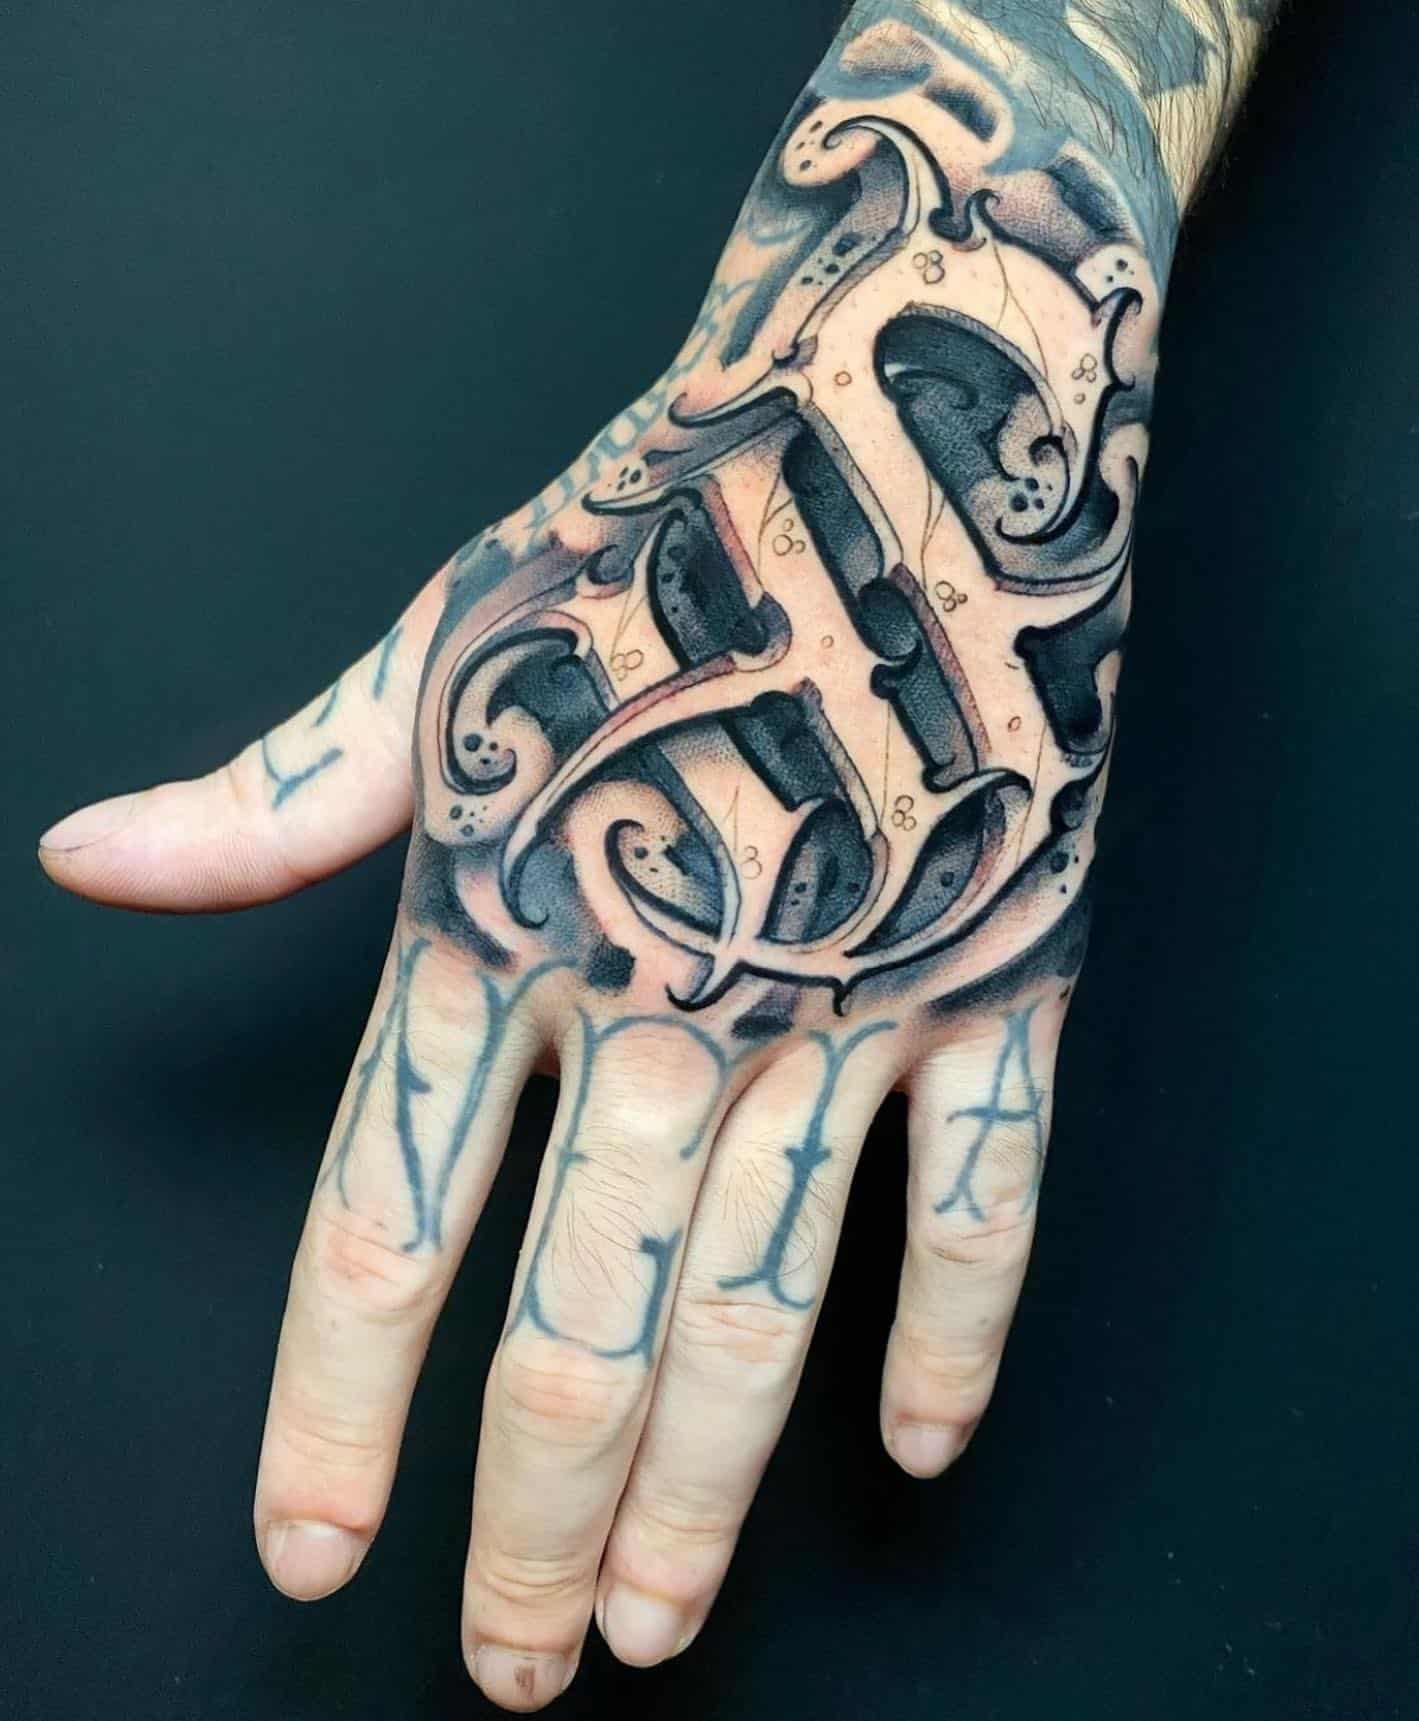 Hand Tattoos For Men on Pinterest